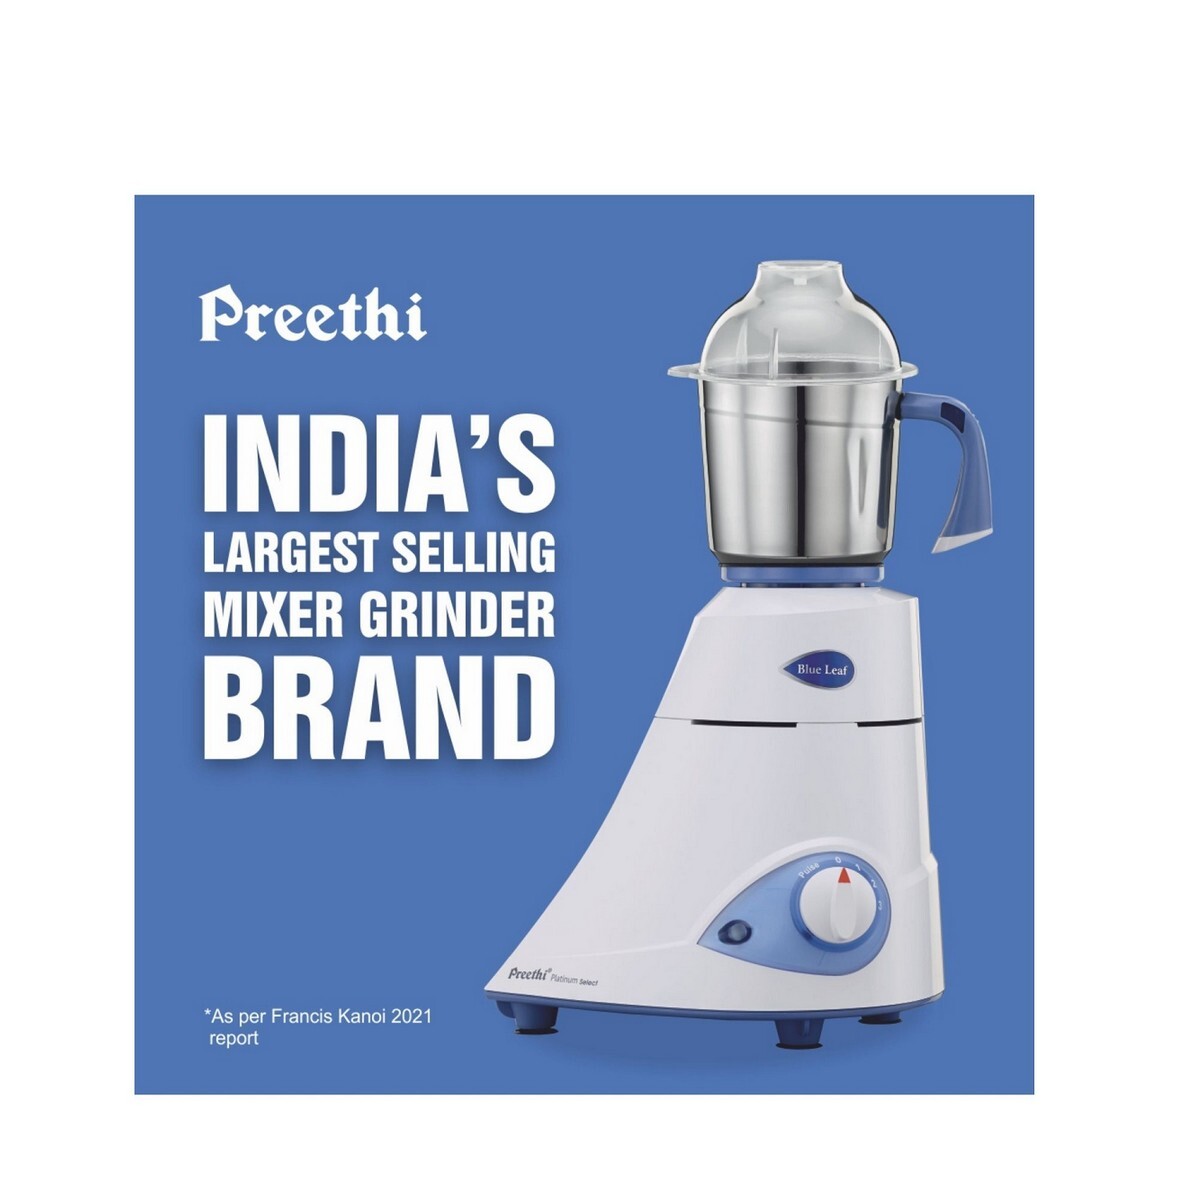 Preethi Platinum Select Blue Leaf 750 Mixer Grinder (3 Jars, White)